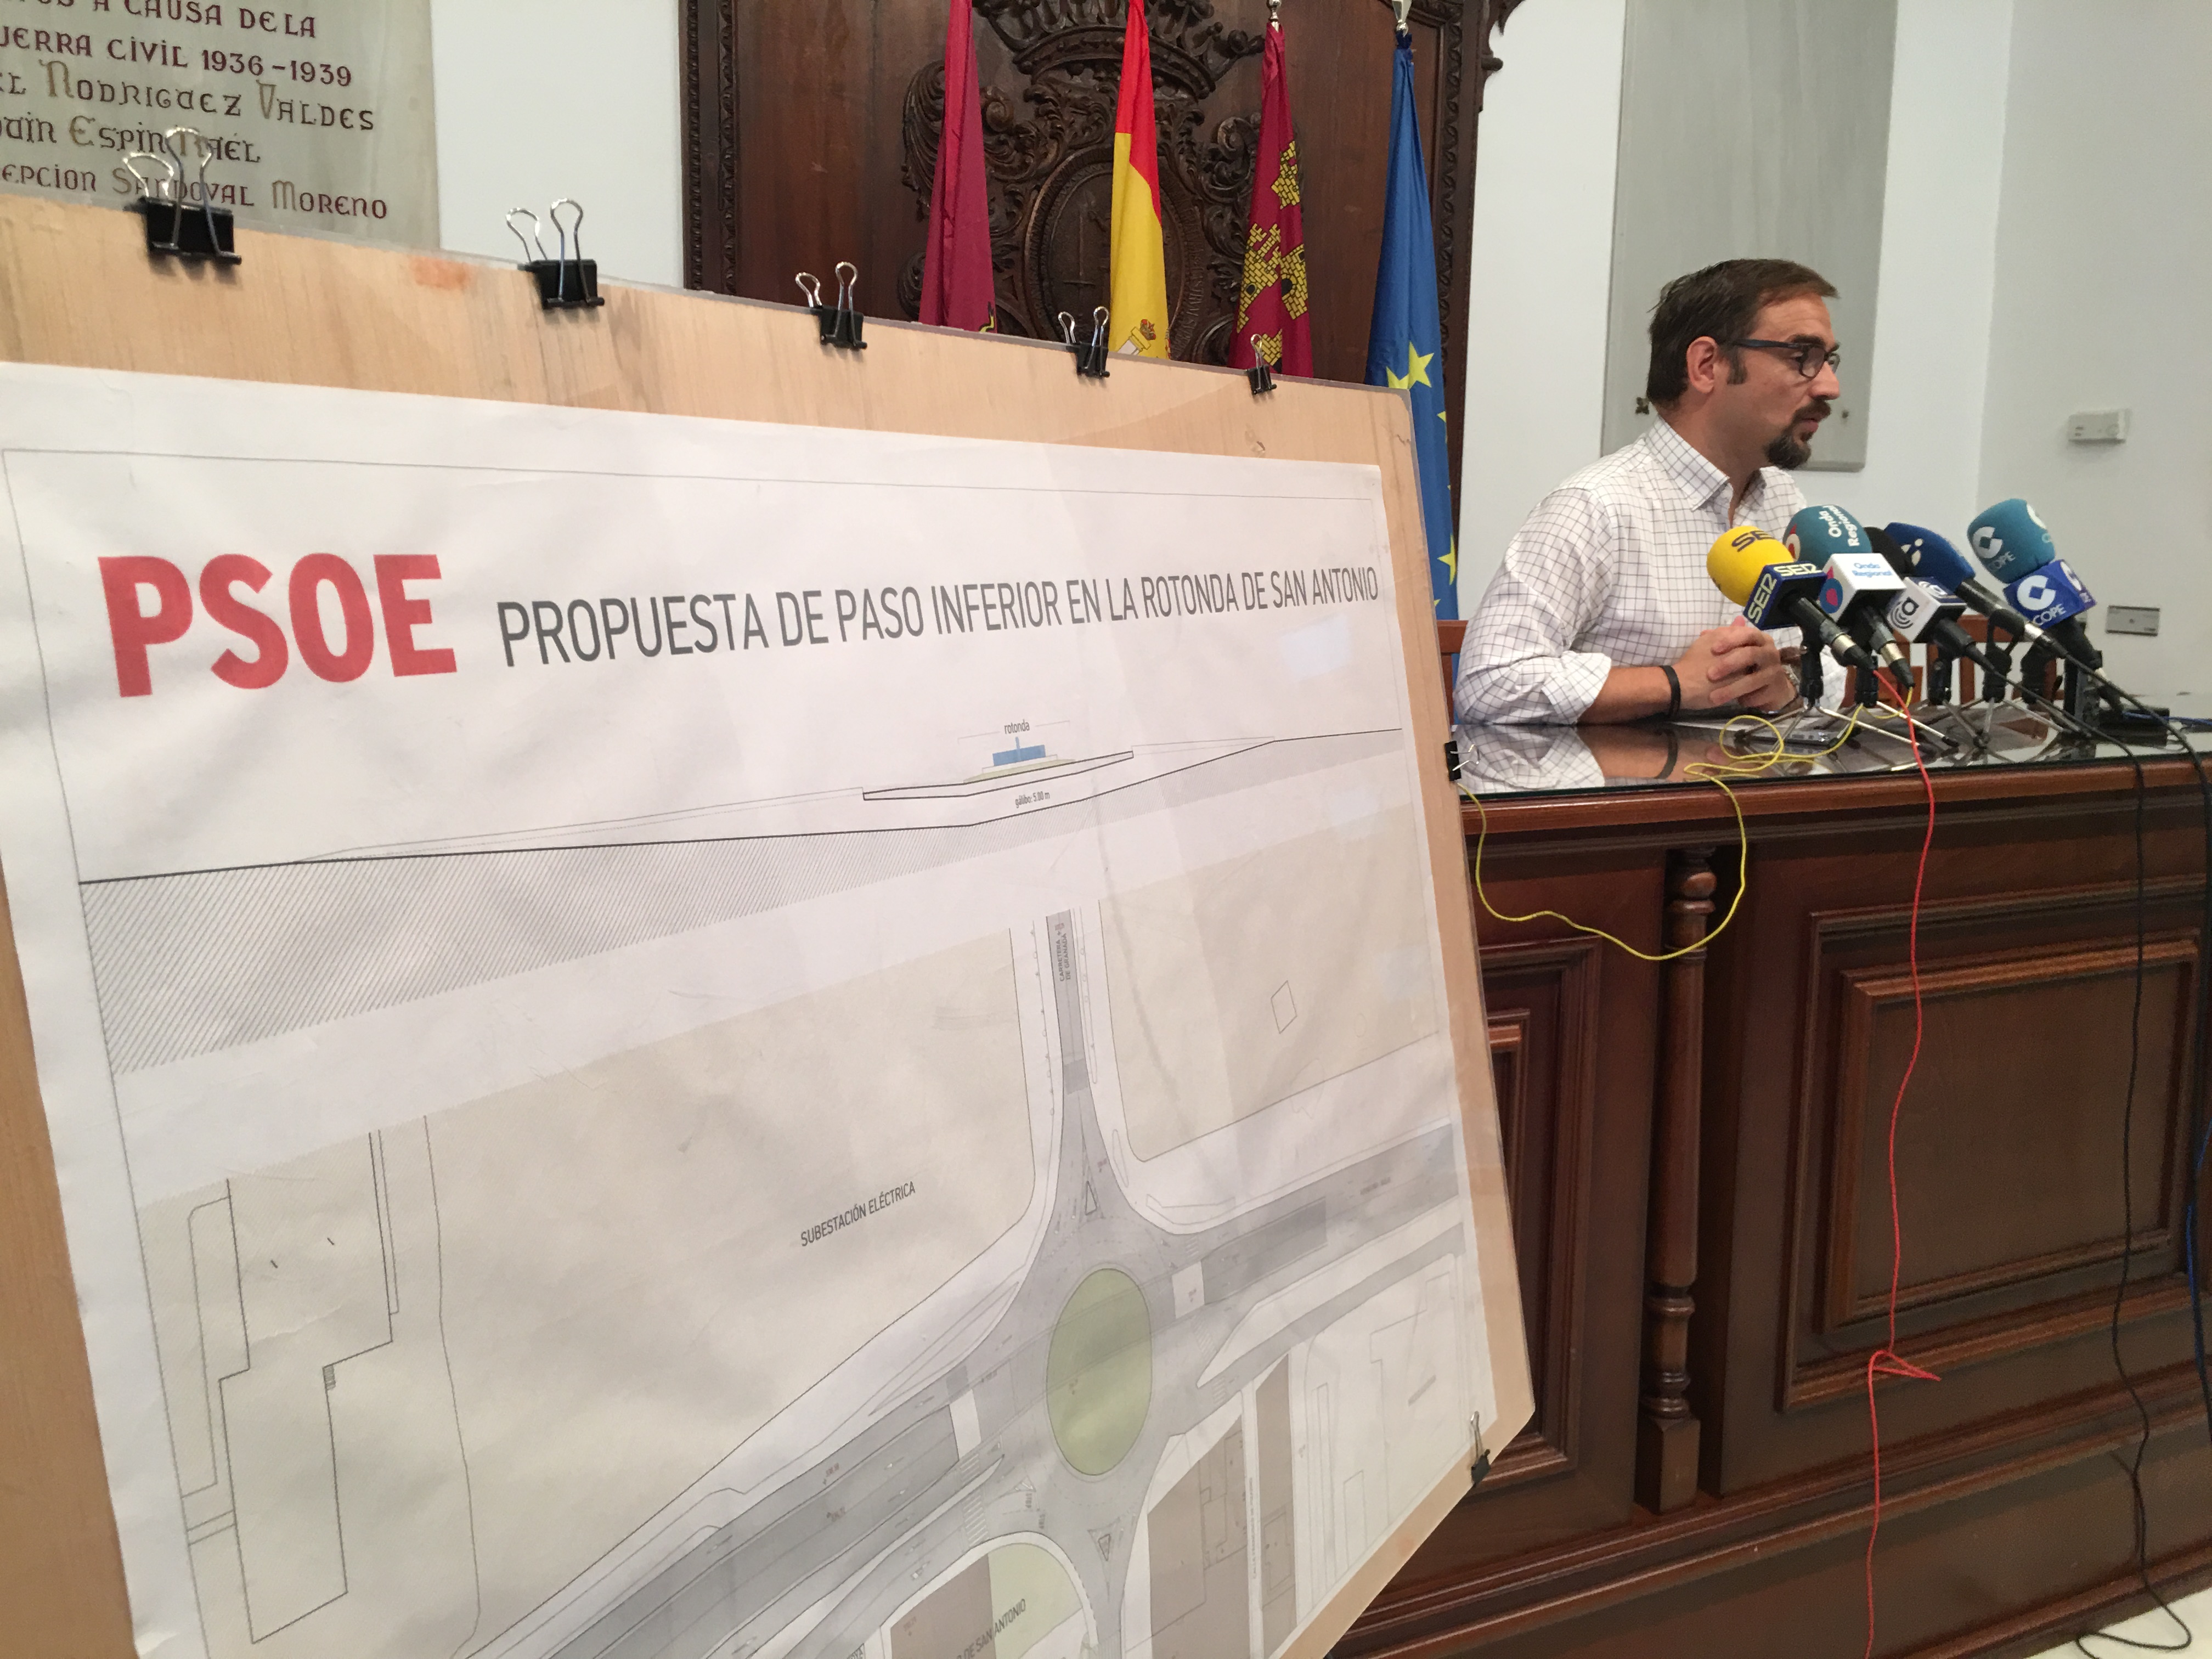 El PSOE vuelve a exigir la construcción de un paso inferior para vehículos que solucione los atascos diarios en San Antonio